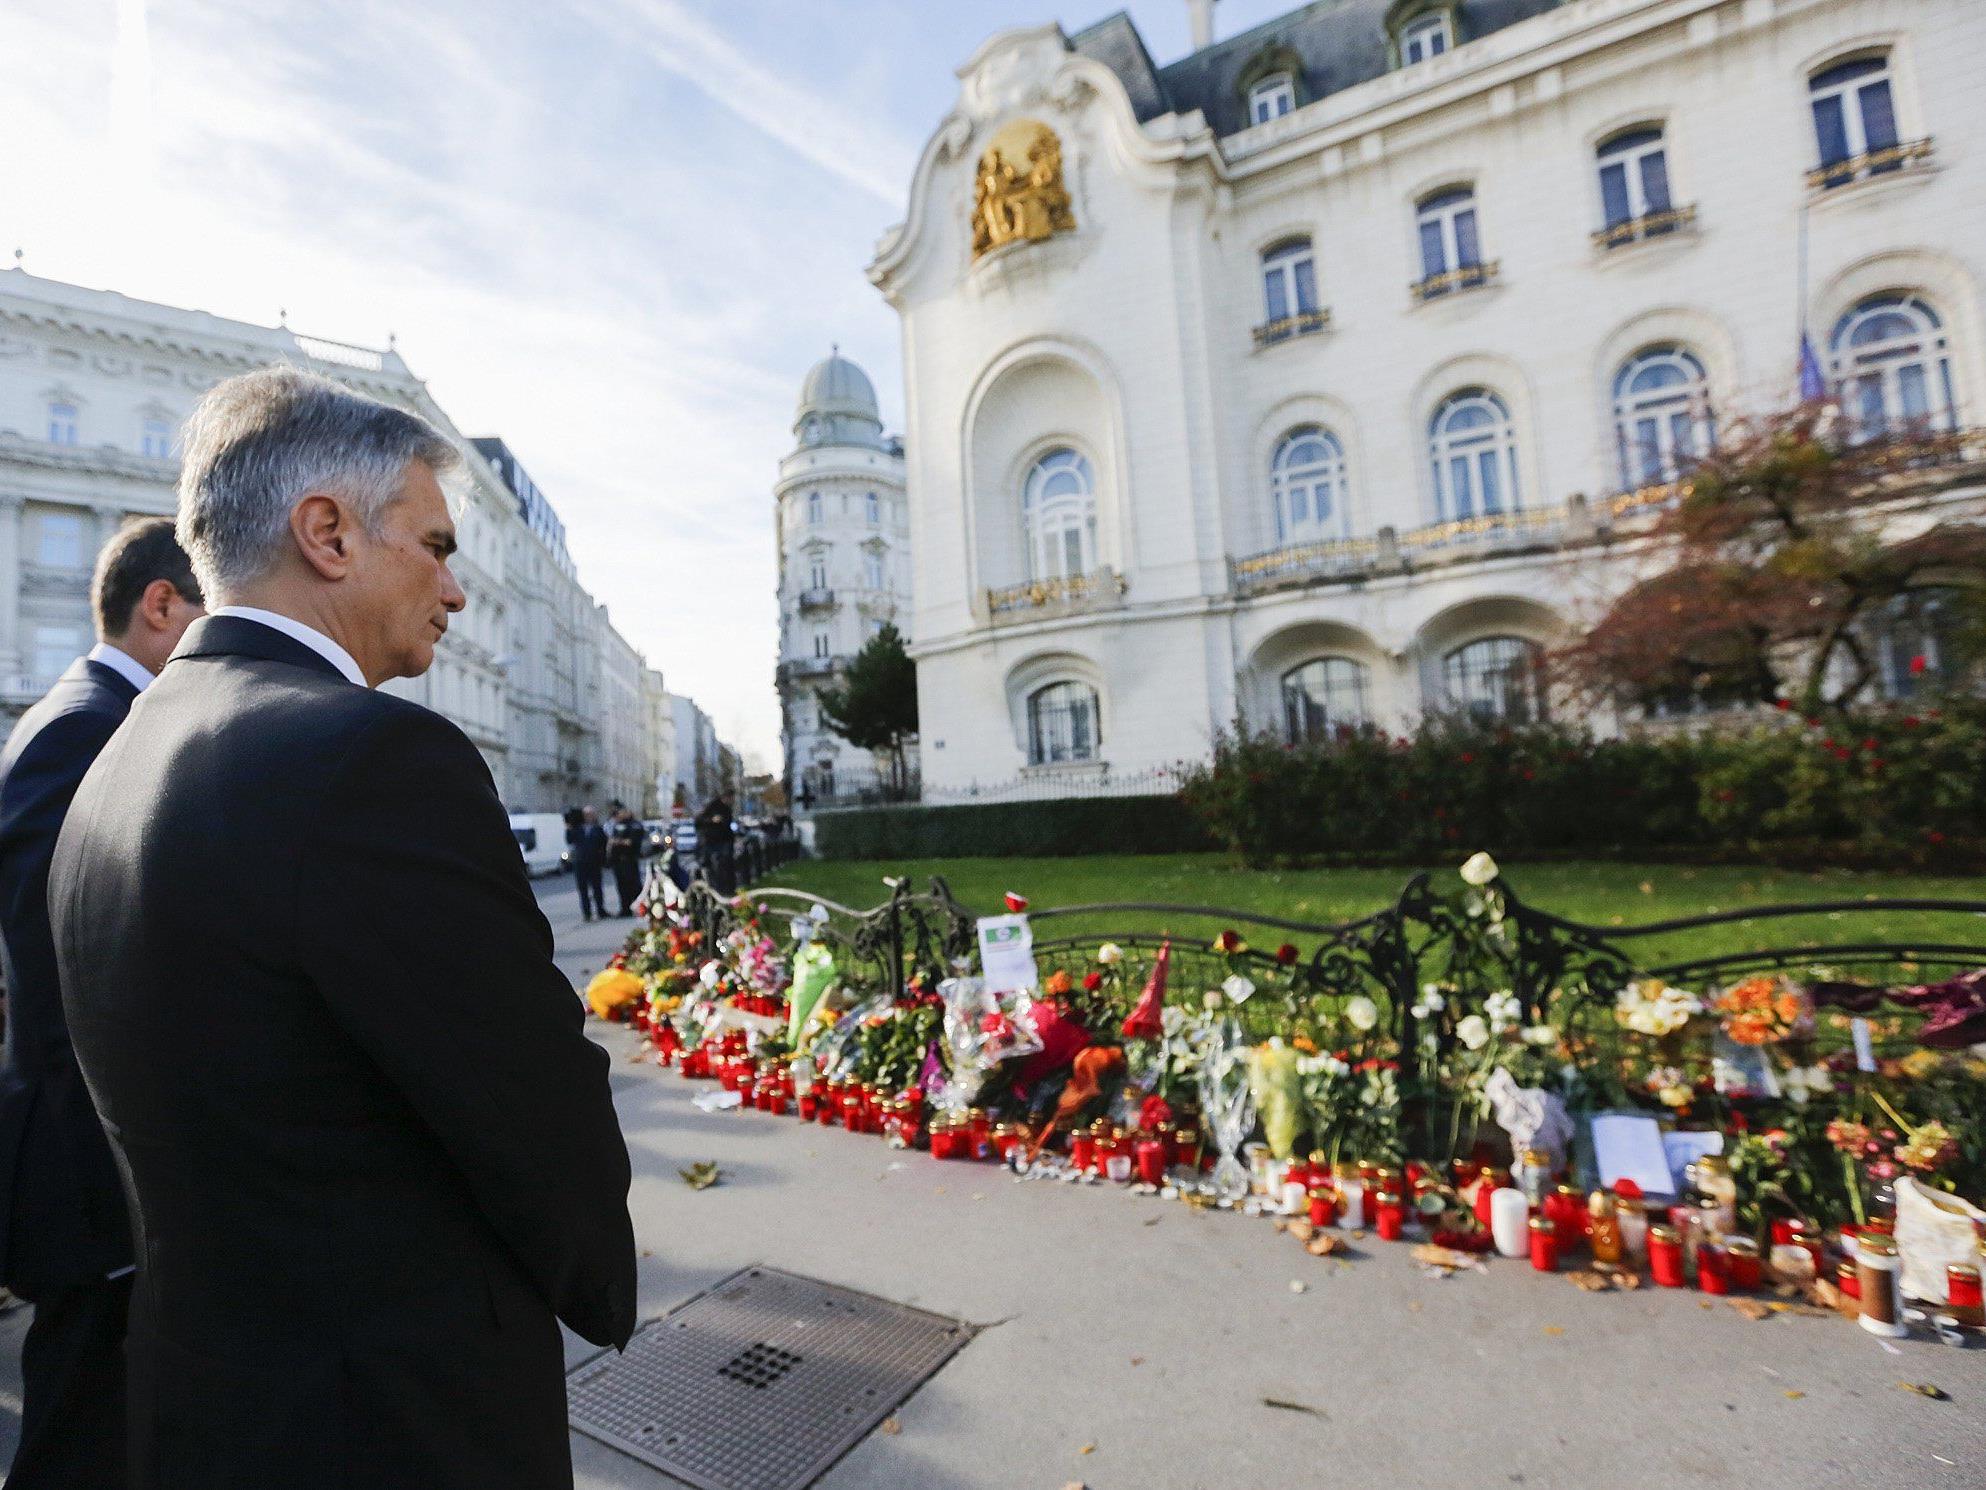 Bundeskanzler Werner Faymann sagt Frankreich im Kampf gegen den Terror Hilfe zu,